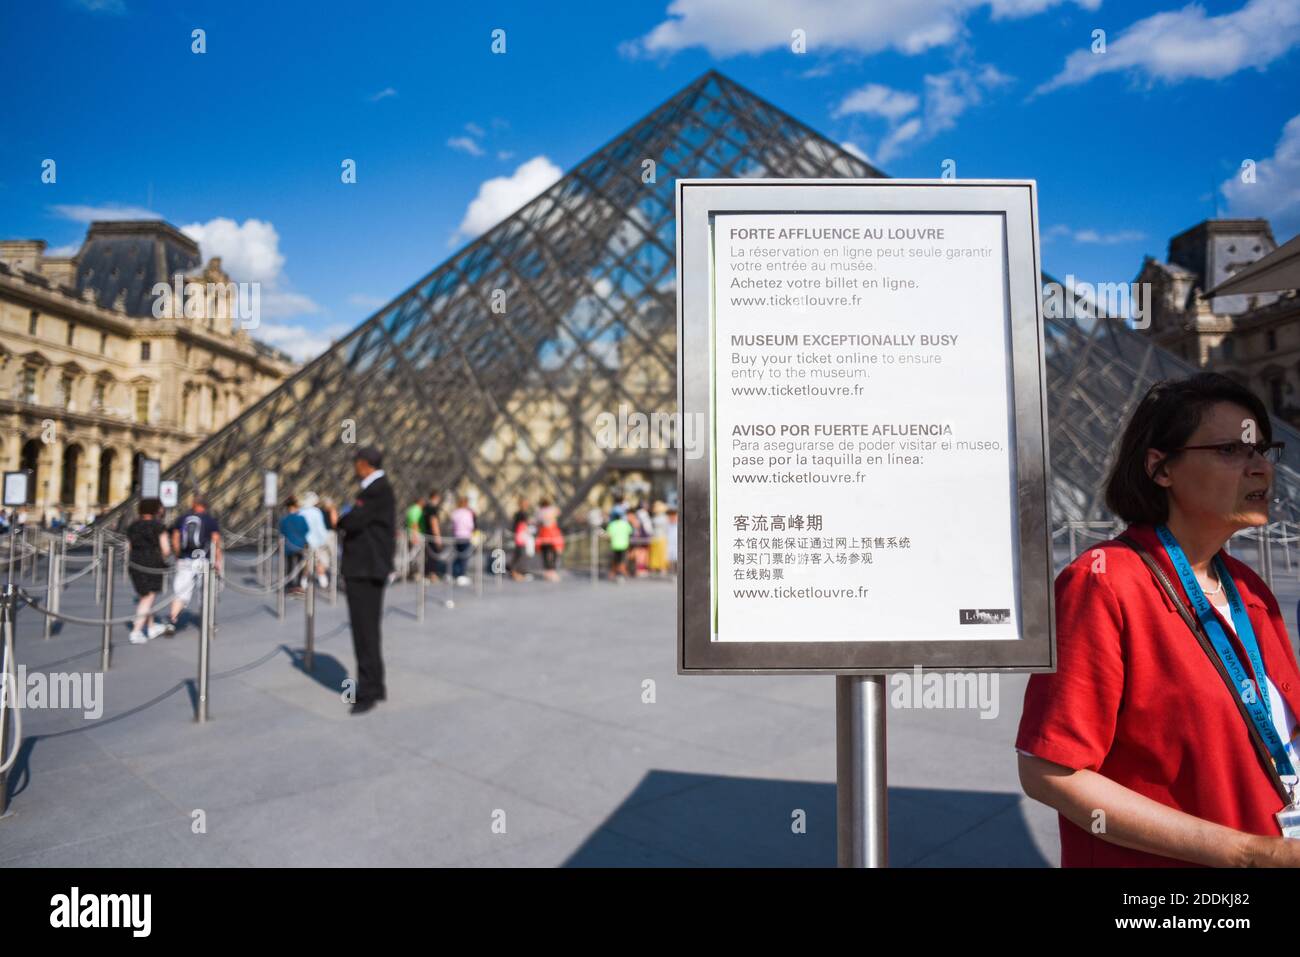 Un panneau se trouve devant la Pyramide du Louvre le 31 2019 juillet à  Paris, en France. Quiconque prévoit de visiter le musée du Louvre à Paris a  été averti de réserver